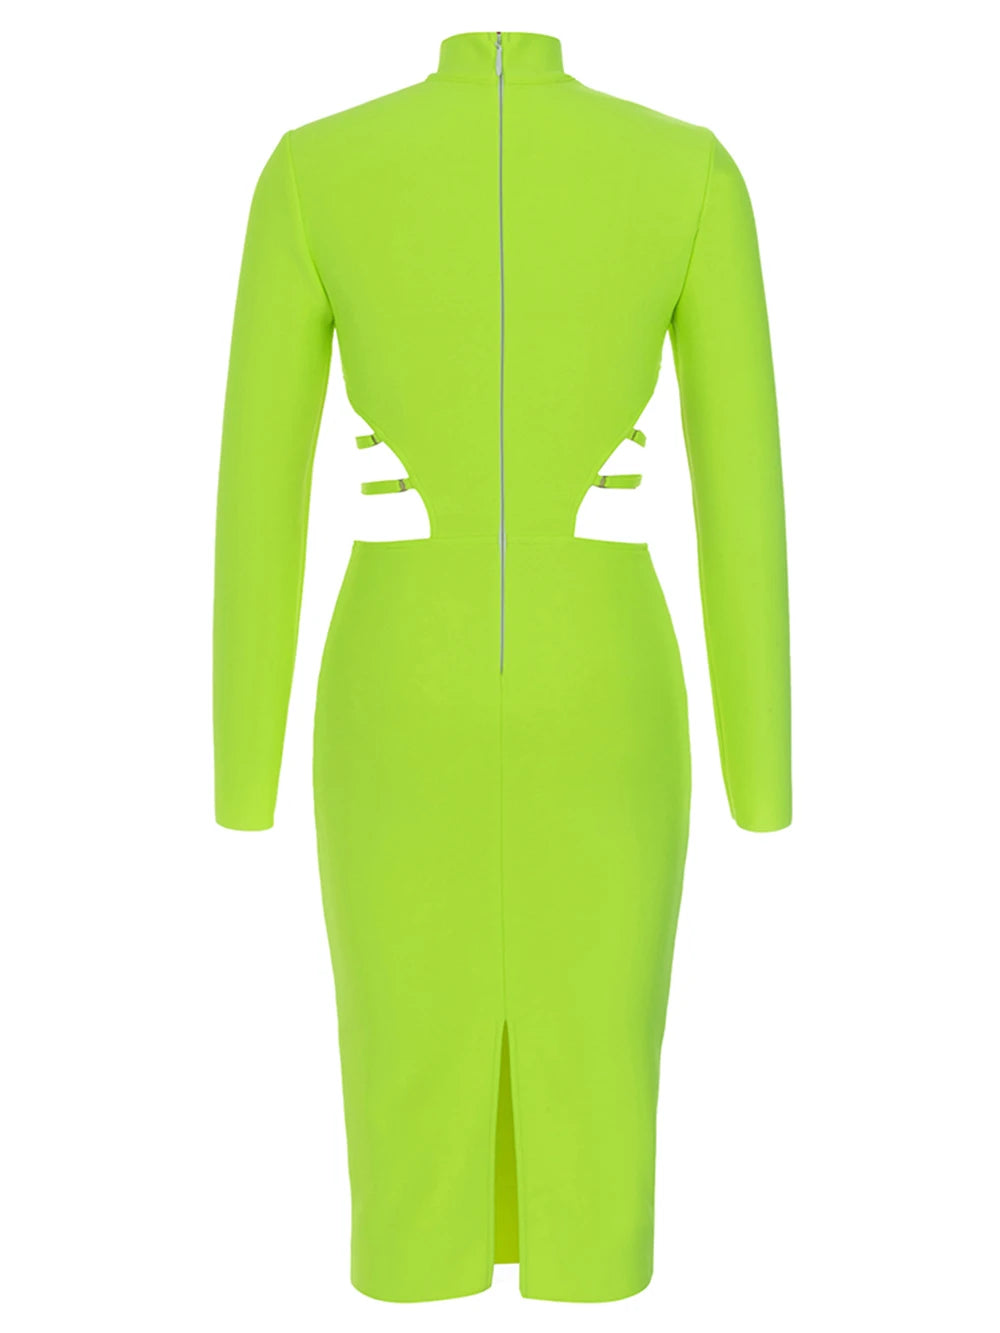 Fluorescent Bodycon Bandage Dress Fashion Closet Clothing